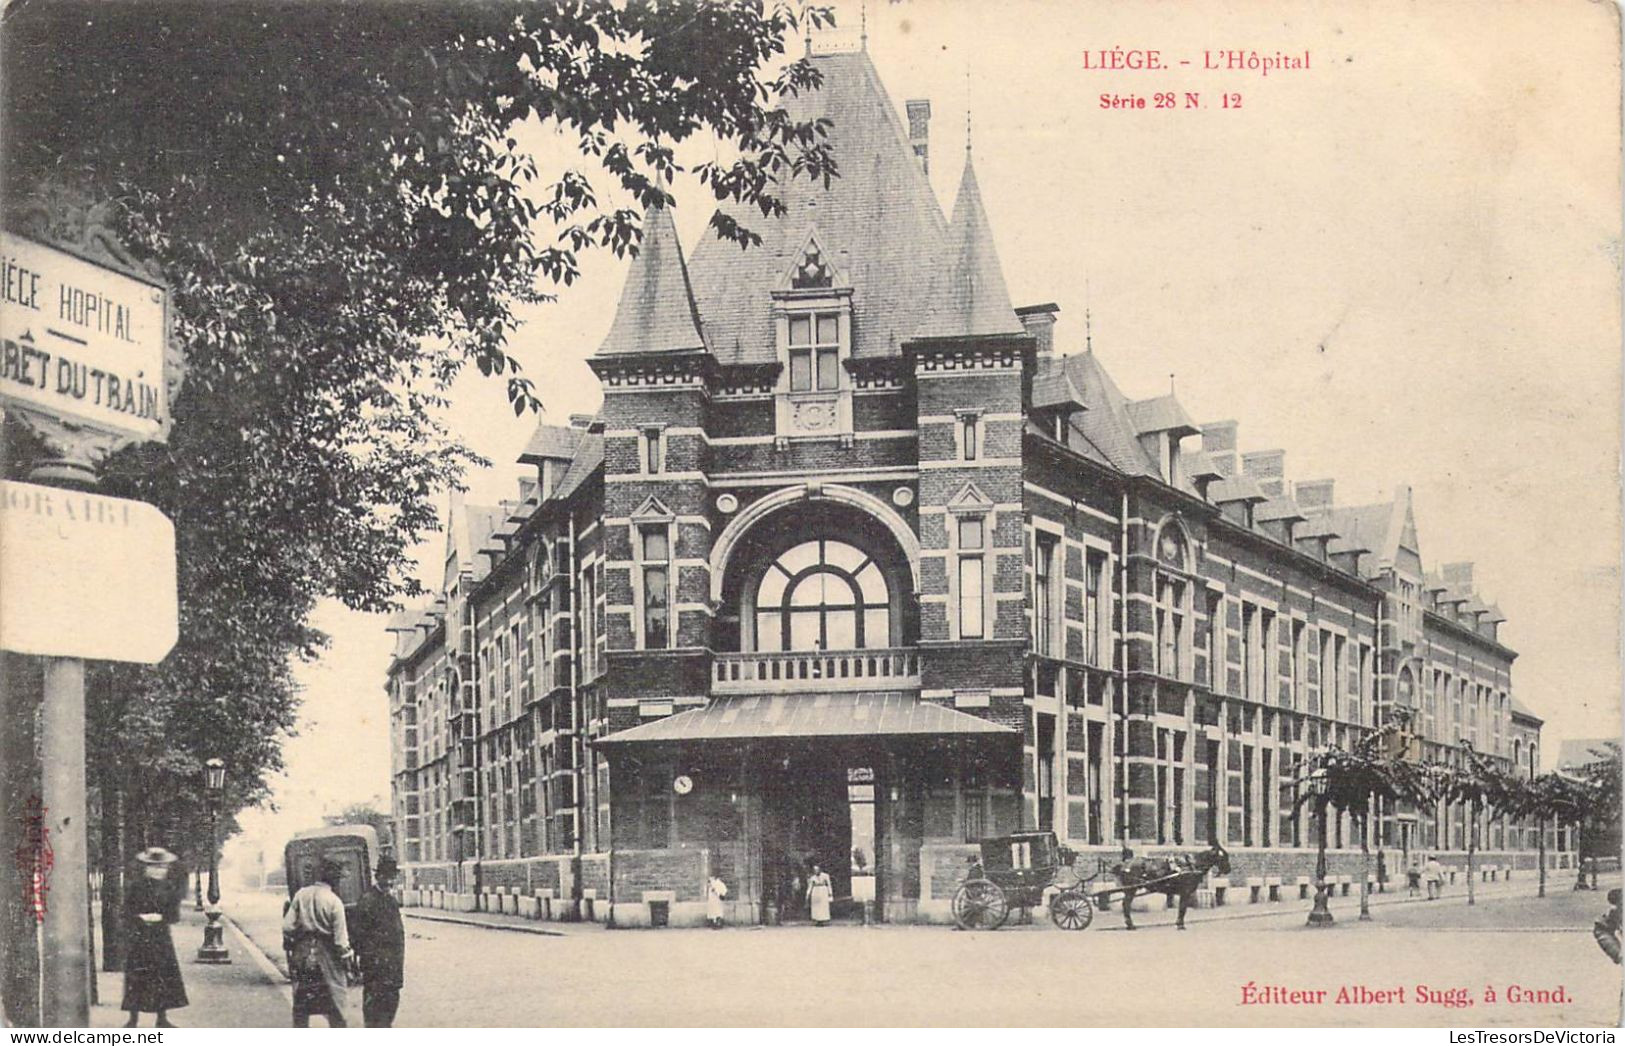 BELGIQUE - Liège - L'Hôpital - Carte Postale Ancienne - Liège